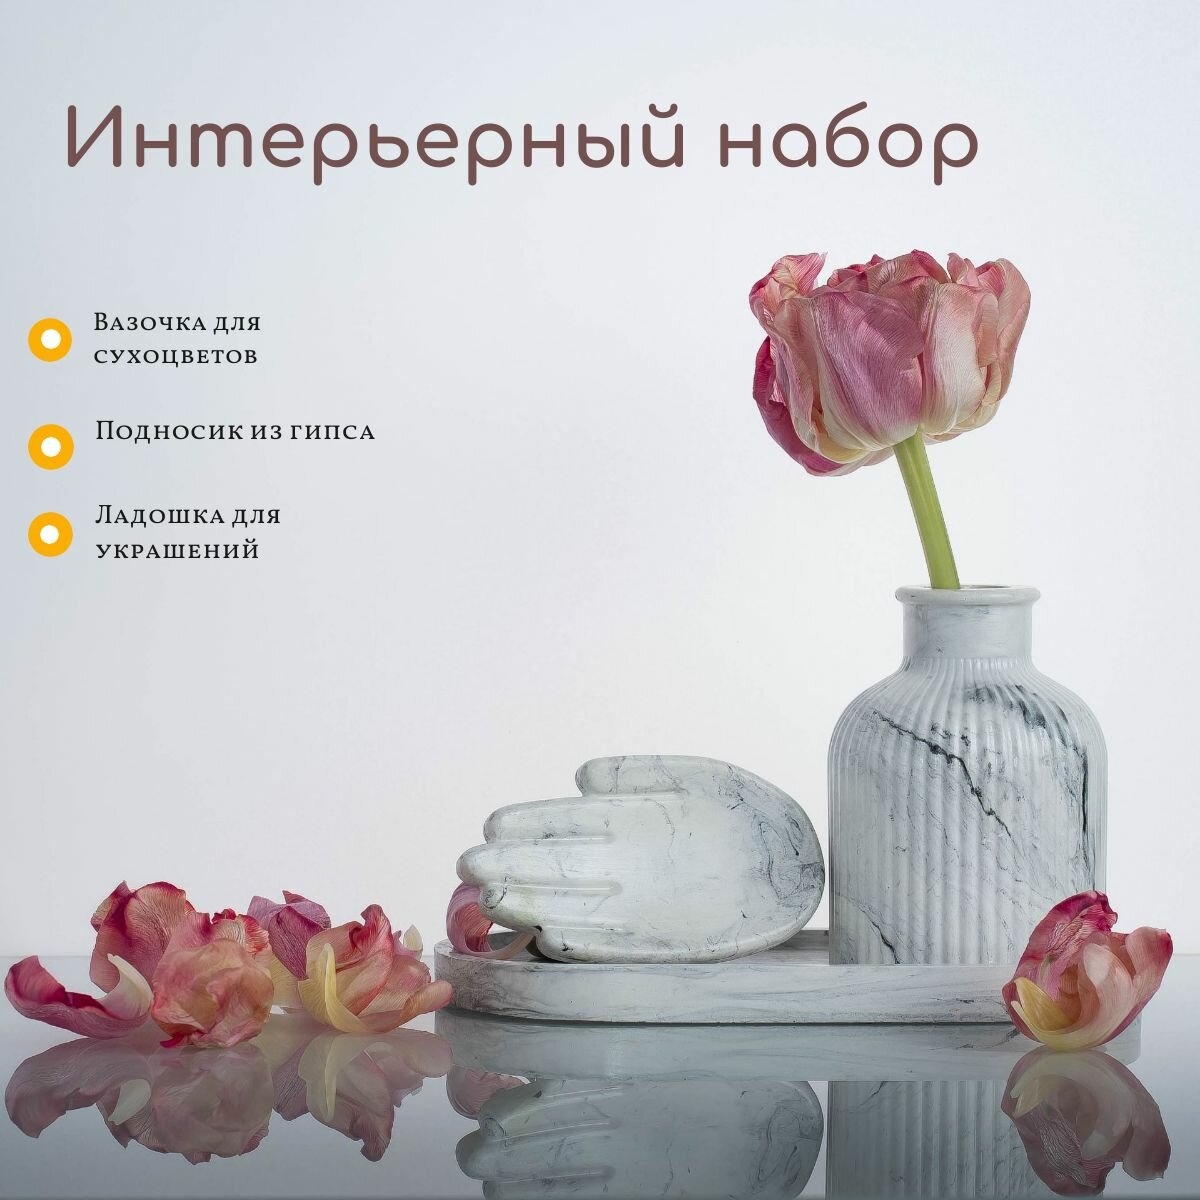 Набор из гипса с ладошкой для украшений, подносом и вазой для сухоцветов